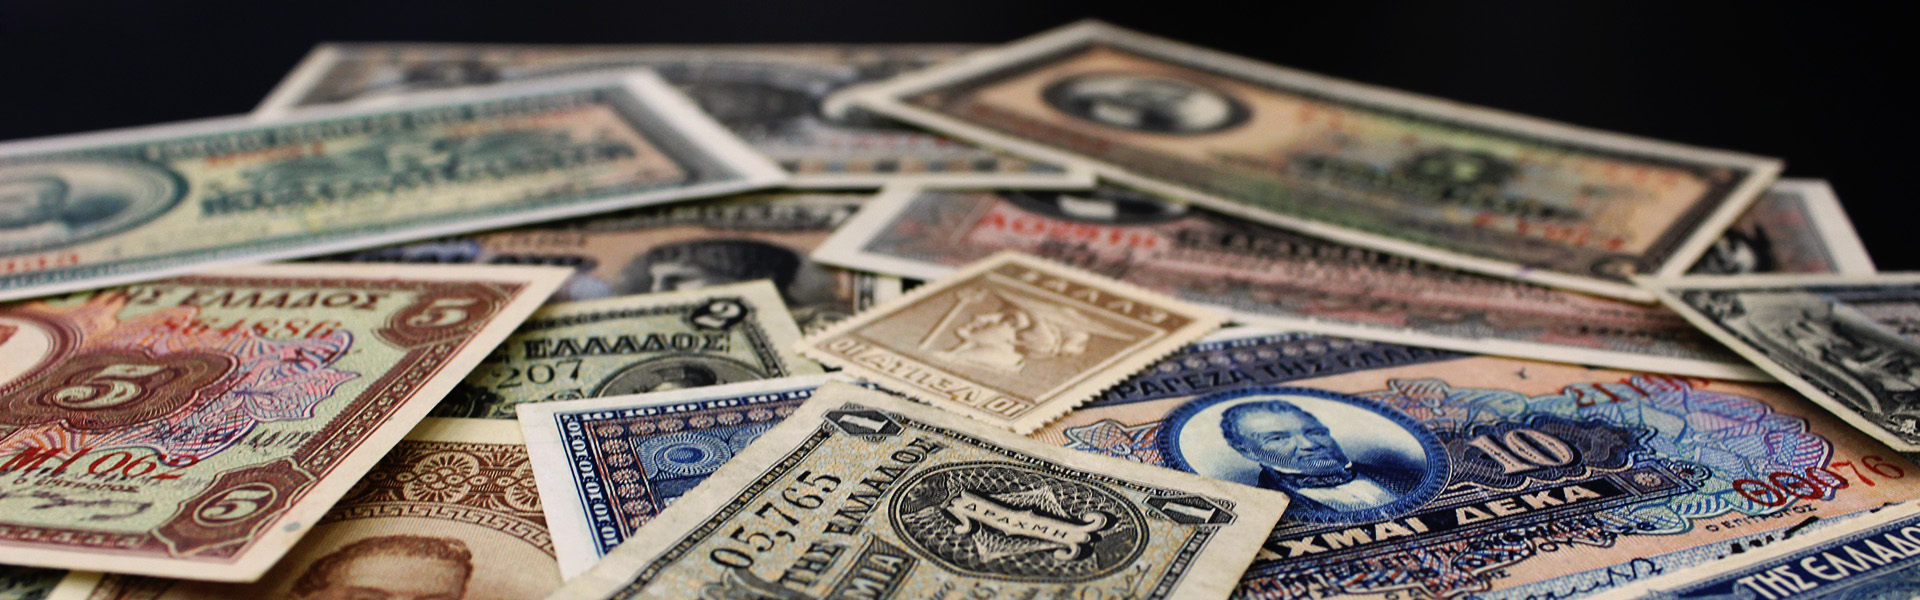 Αυτά είναι τα χαρτονομίσματα που έχουν μεγάλη αξία – Αν τα έχετε κρατήστε τα (βίντεο)